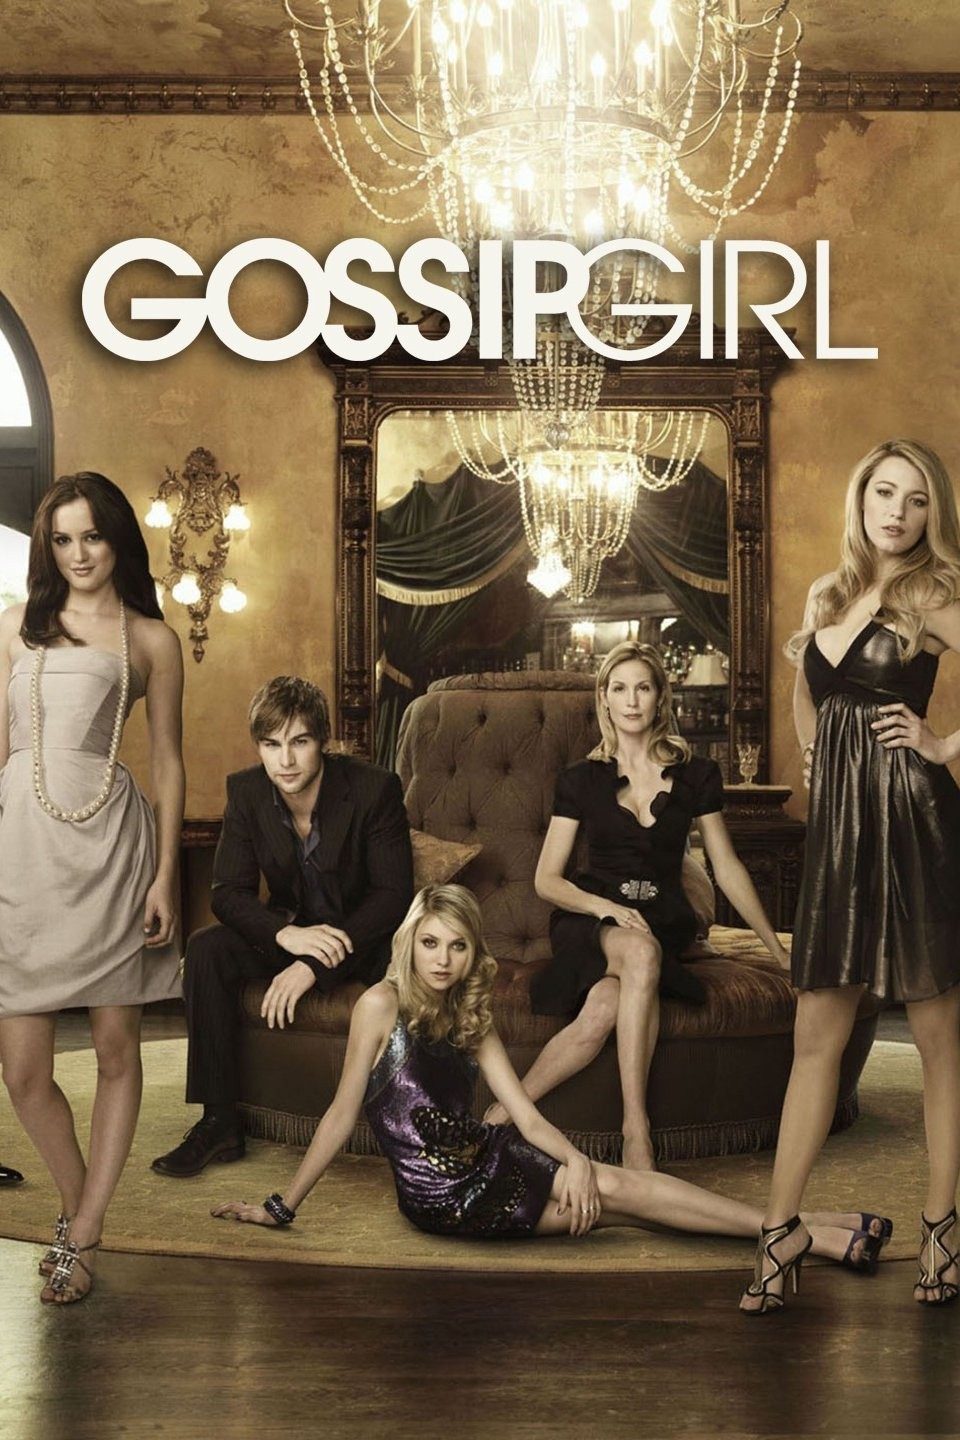 Gossip Girl Episode Schedule on HBO Max - How to Watch Gossip Girl 2022